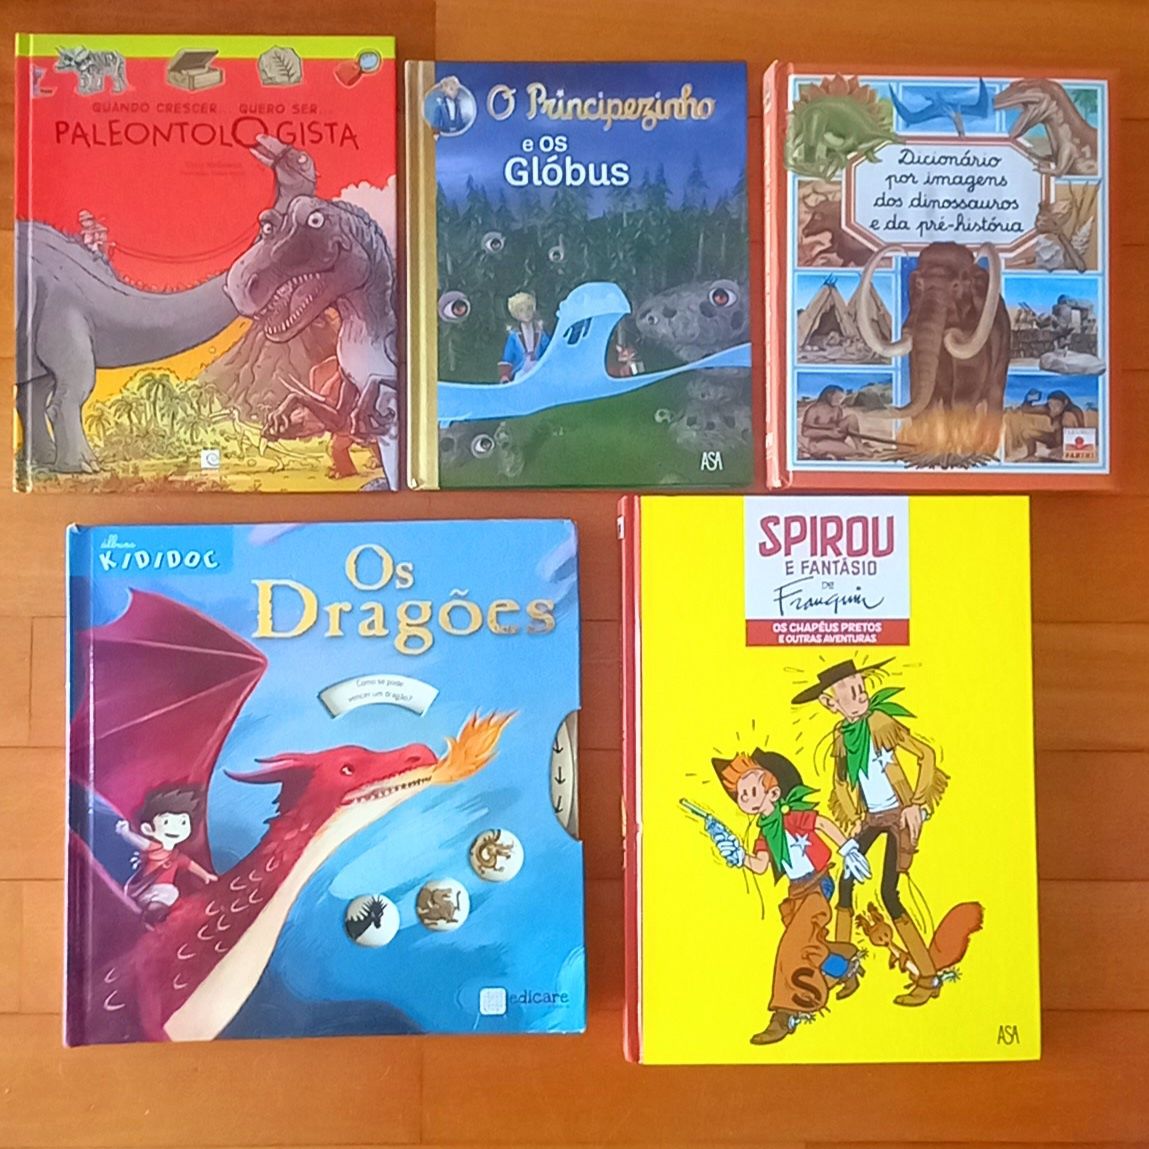 "Dinossauros" "Dragões" "Principezinho" "Spirou"